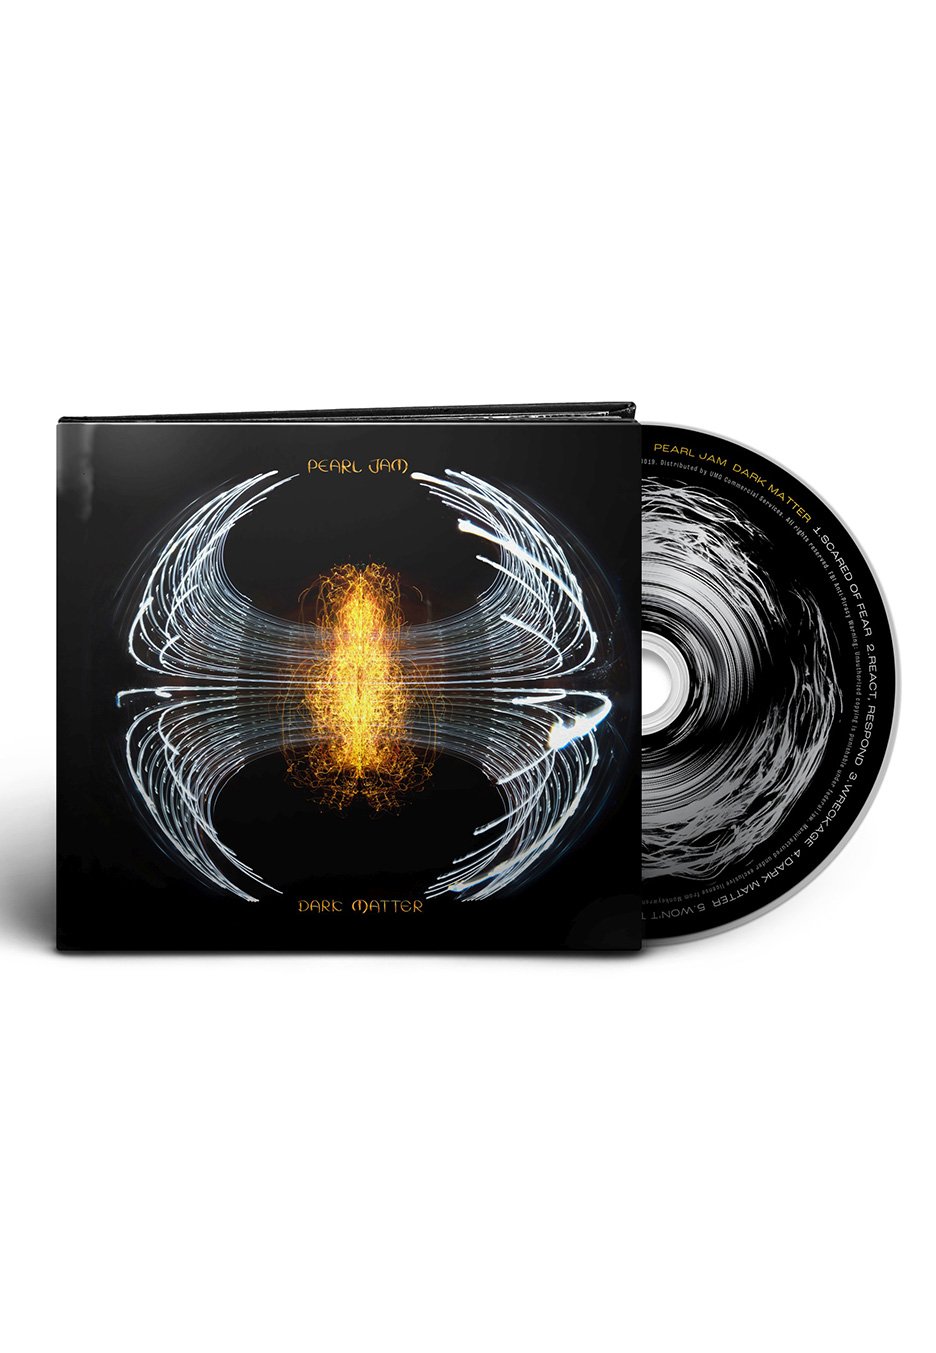 Pearl Jam - Dark Matter - Digipak CD